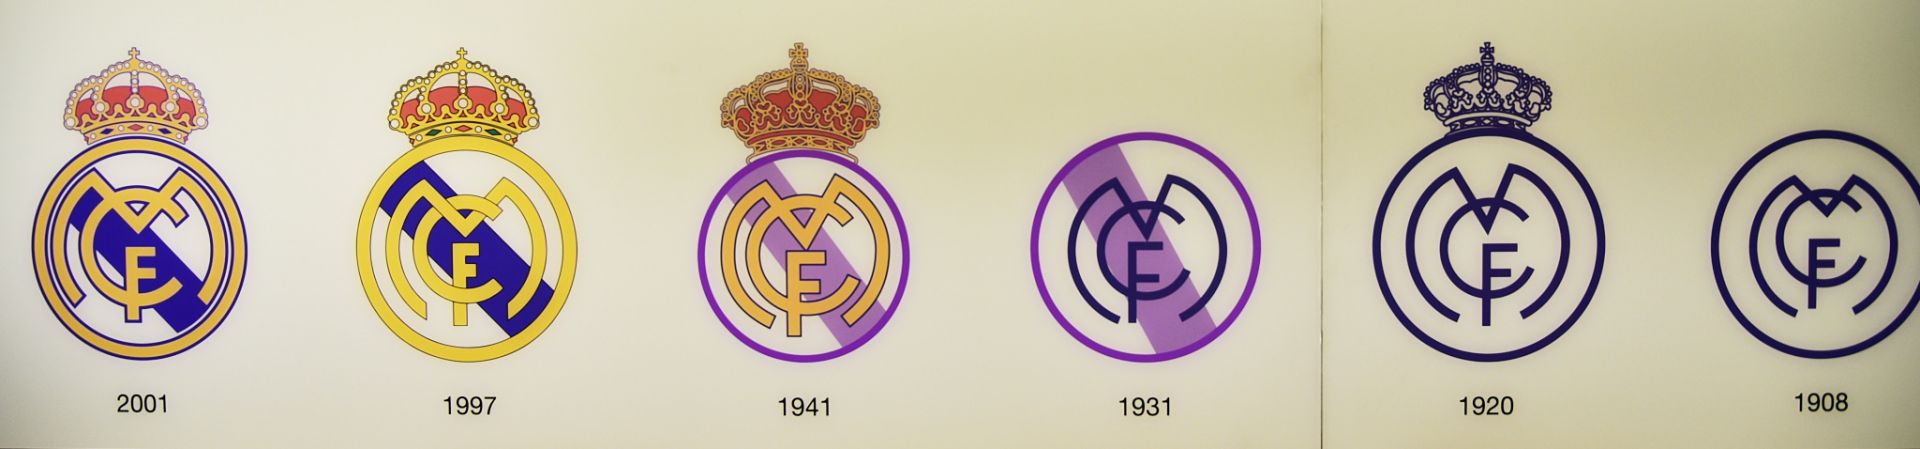 Real Madrid được gắn hình vương miện vào logo từ năm 1920. Nhưng trong thời Đệ nhị Cộng hoà Tây Ban Nha (1931-1939), các biểu tượng của hoàng gia bị cấm. Năm 1941, Real Madrid lại được “đội vương miện”.